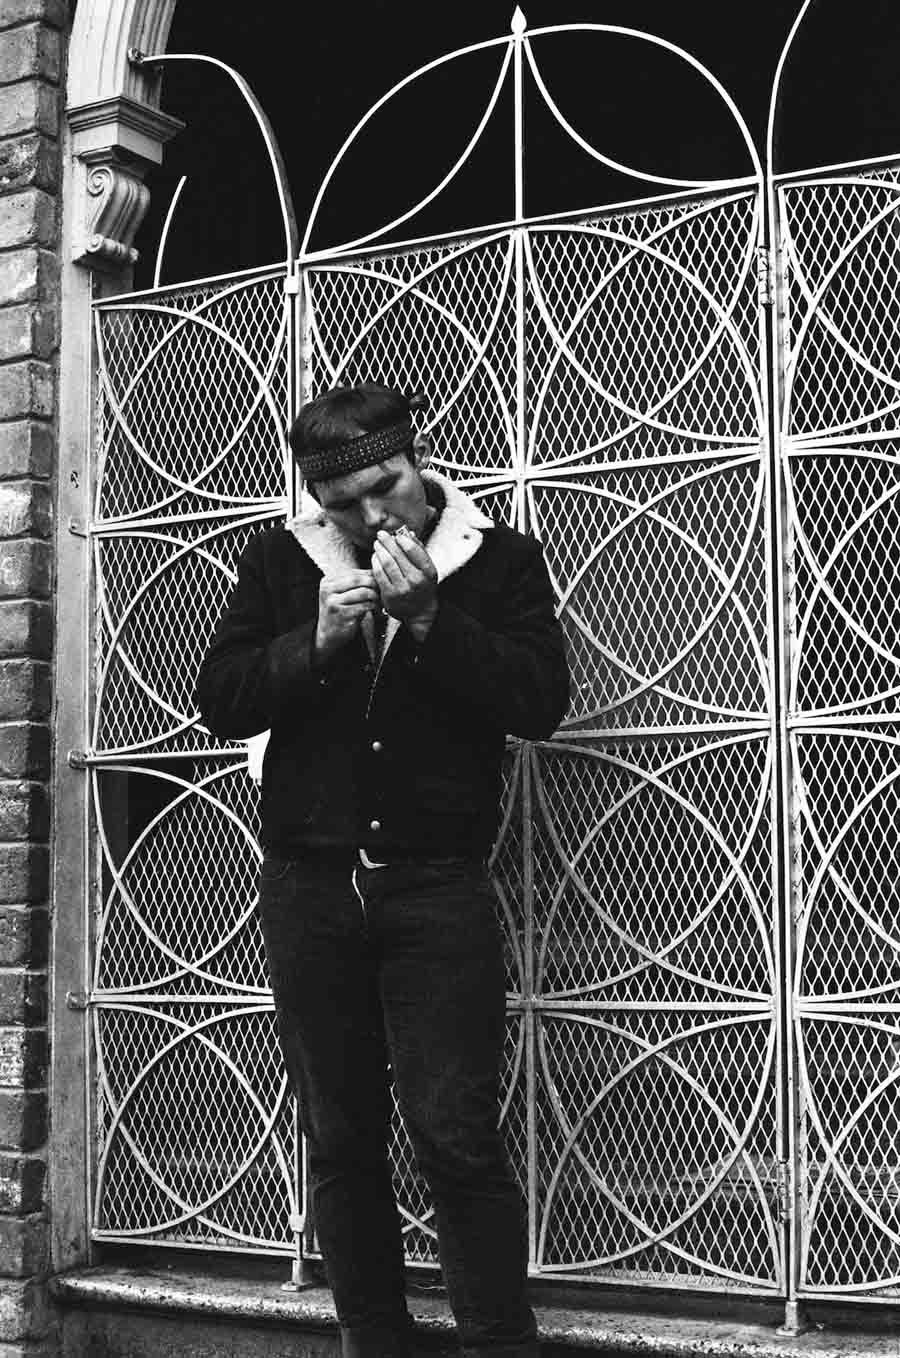 haight ashbury 1967 smoker